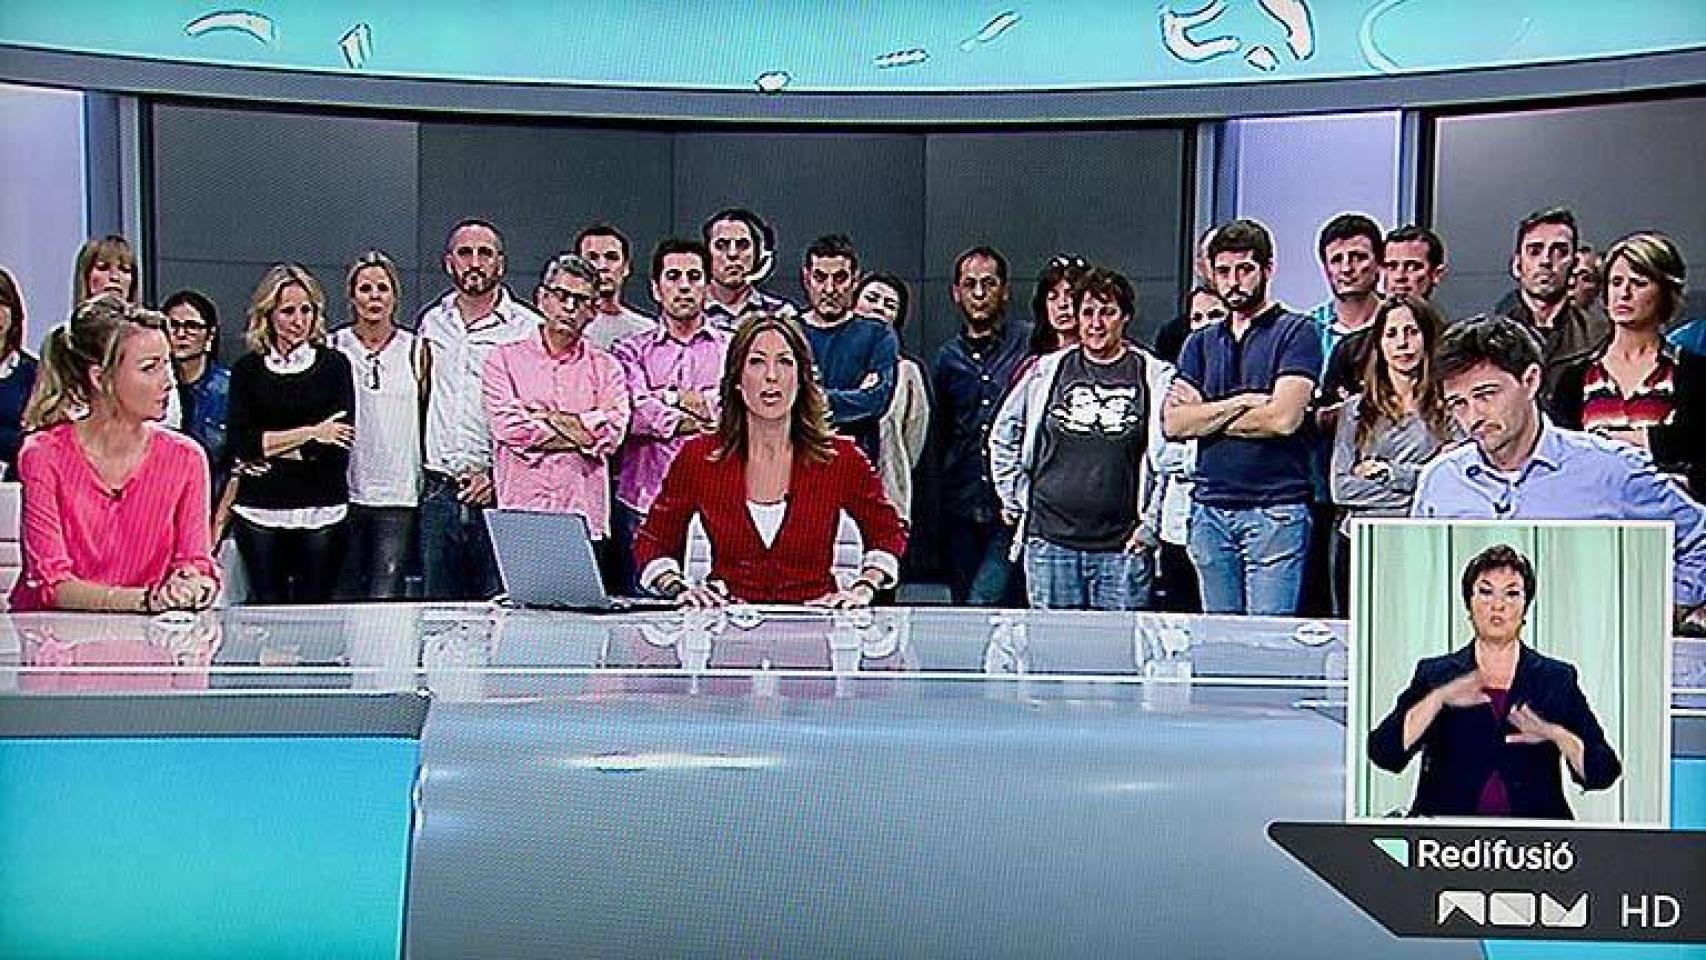 Las Cortes valencianas aprueban la resurrección de Canal 9 y 2 canales más